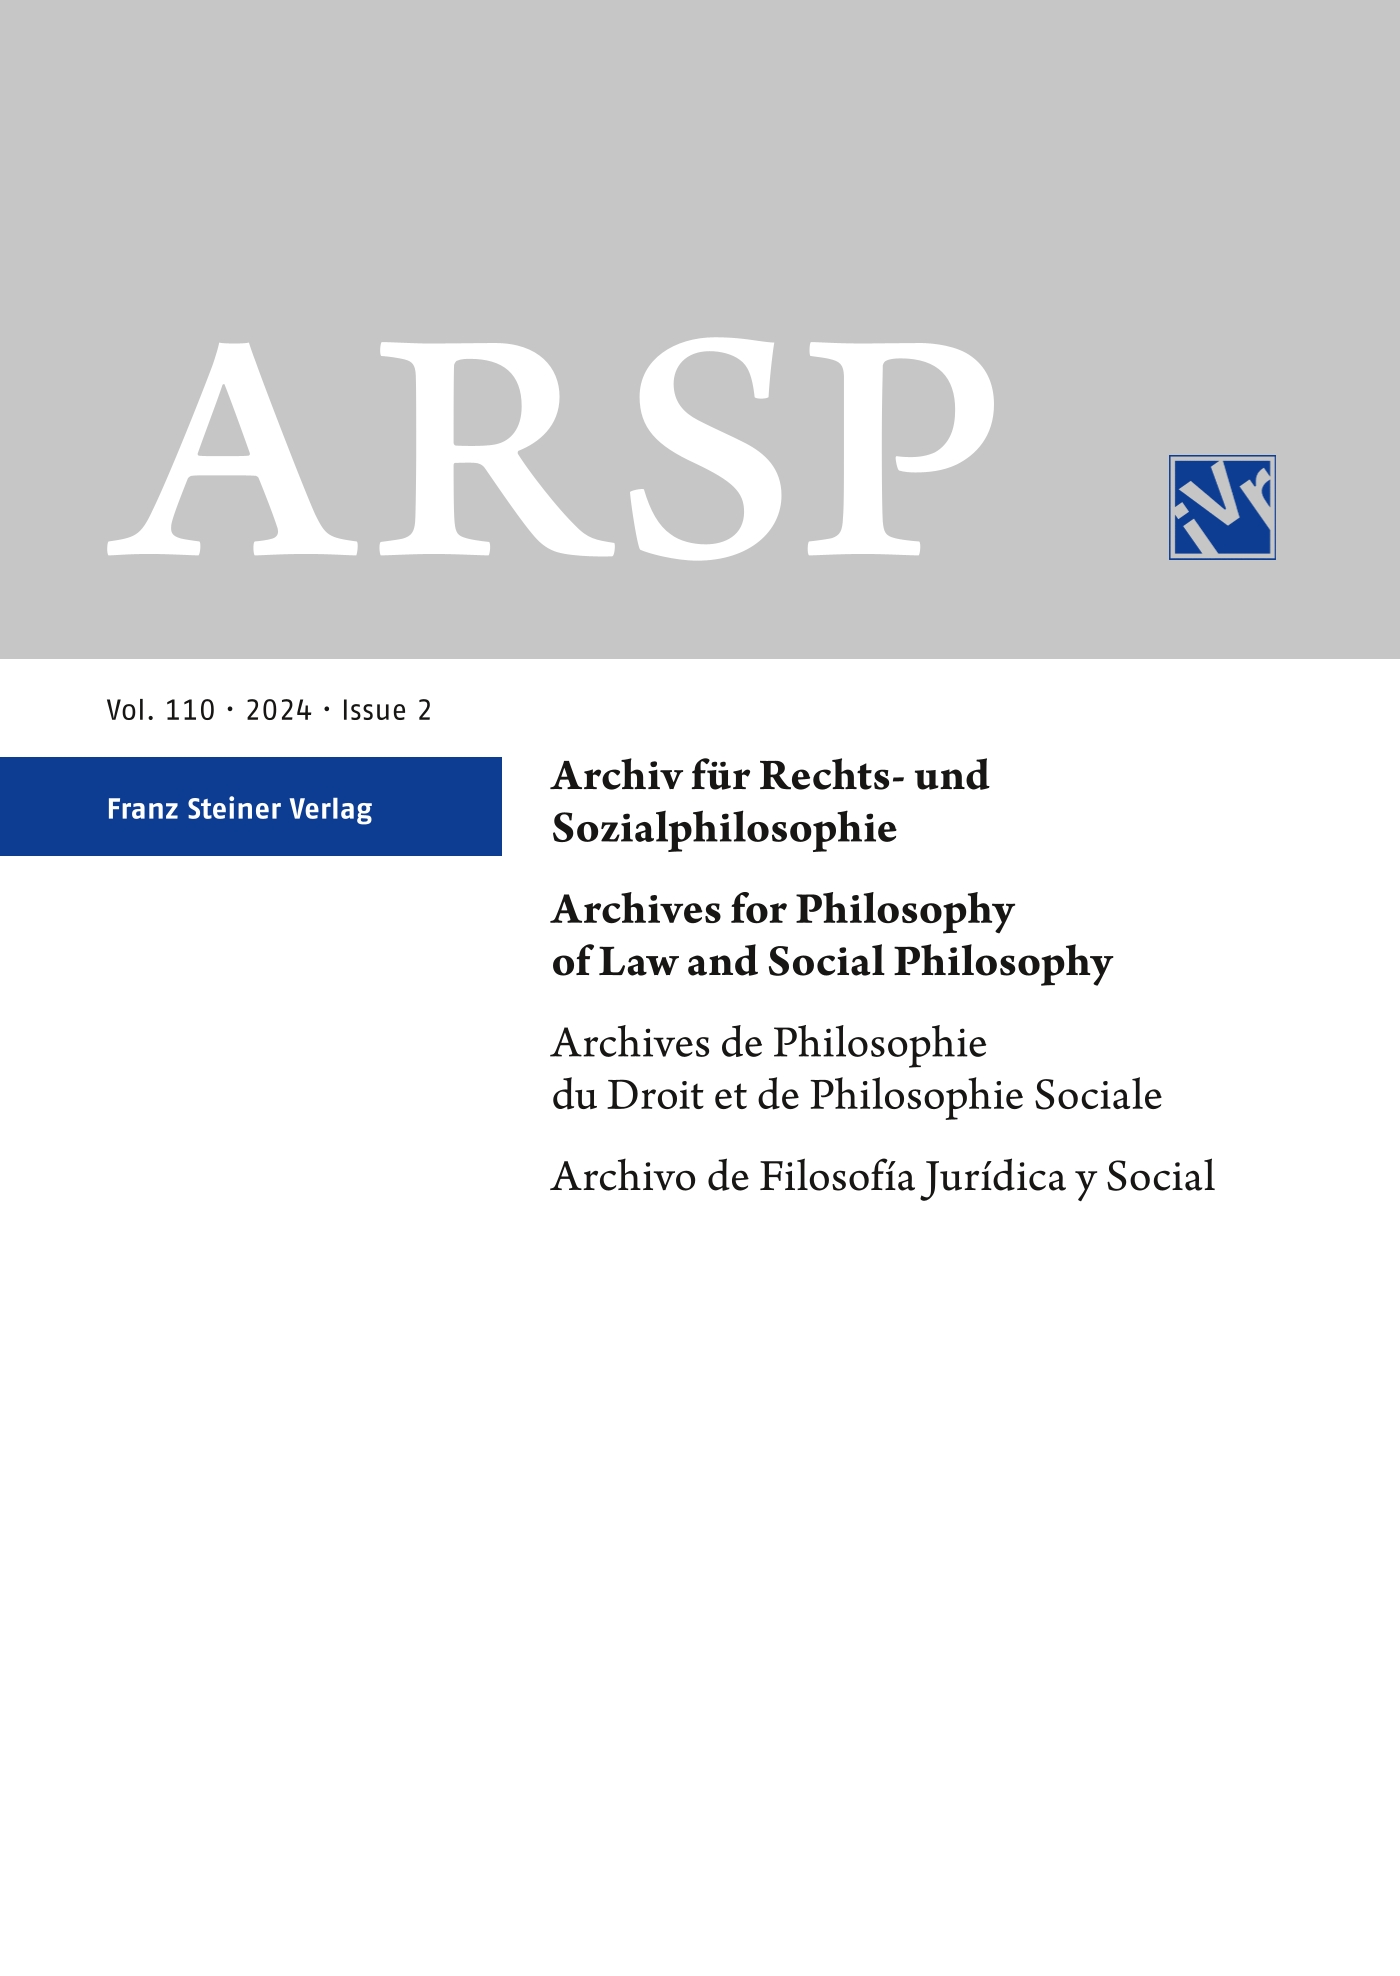 Archiv für Rechts- und Sozialphilosophie - print +online